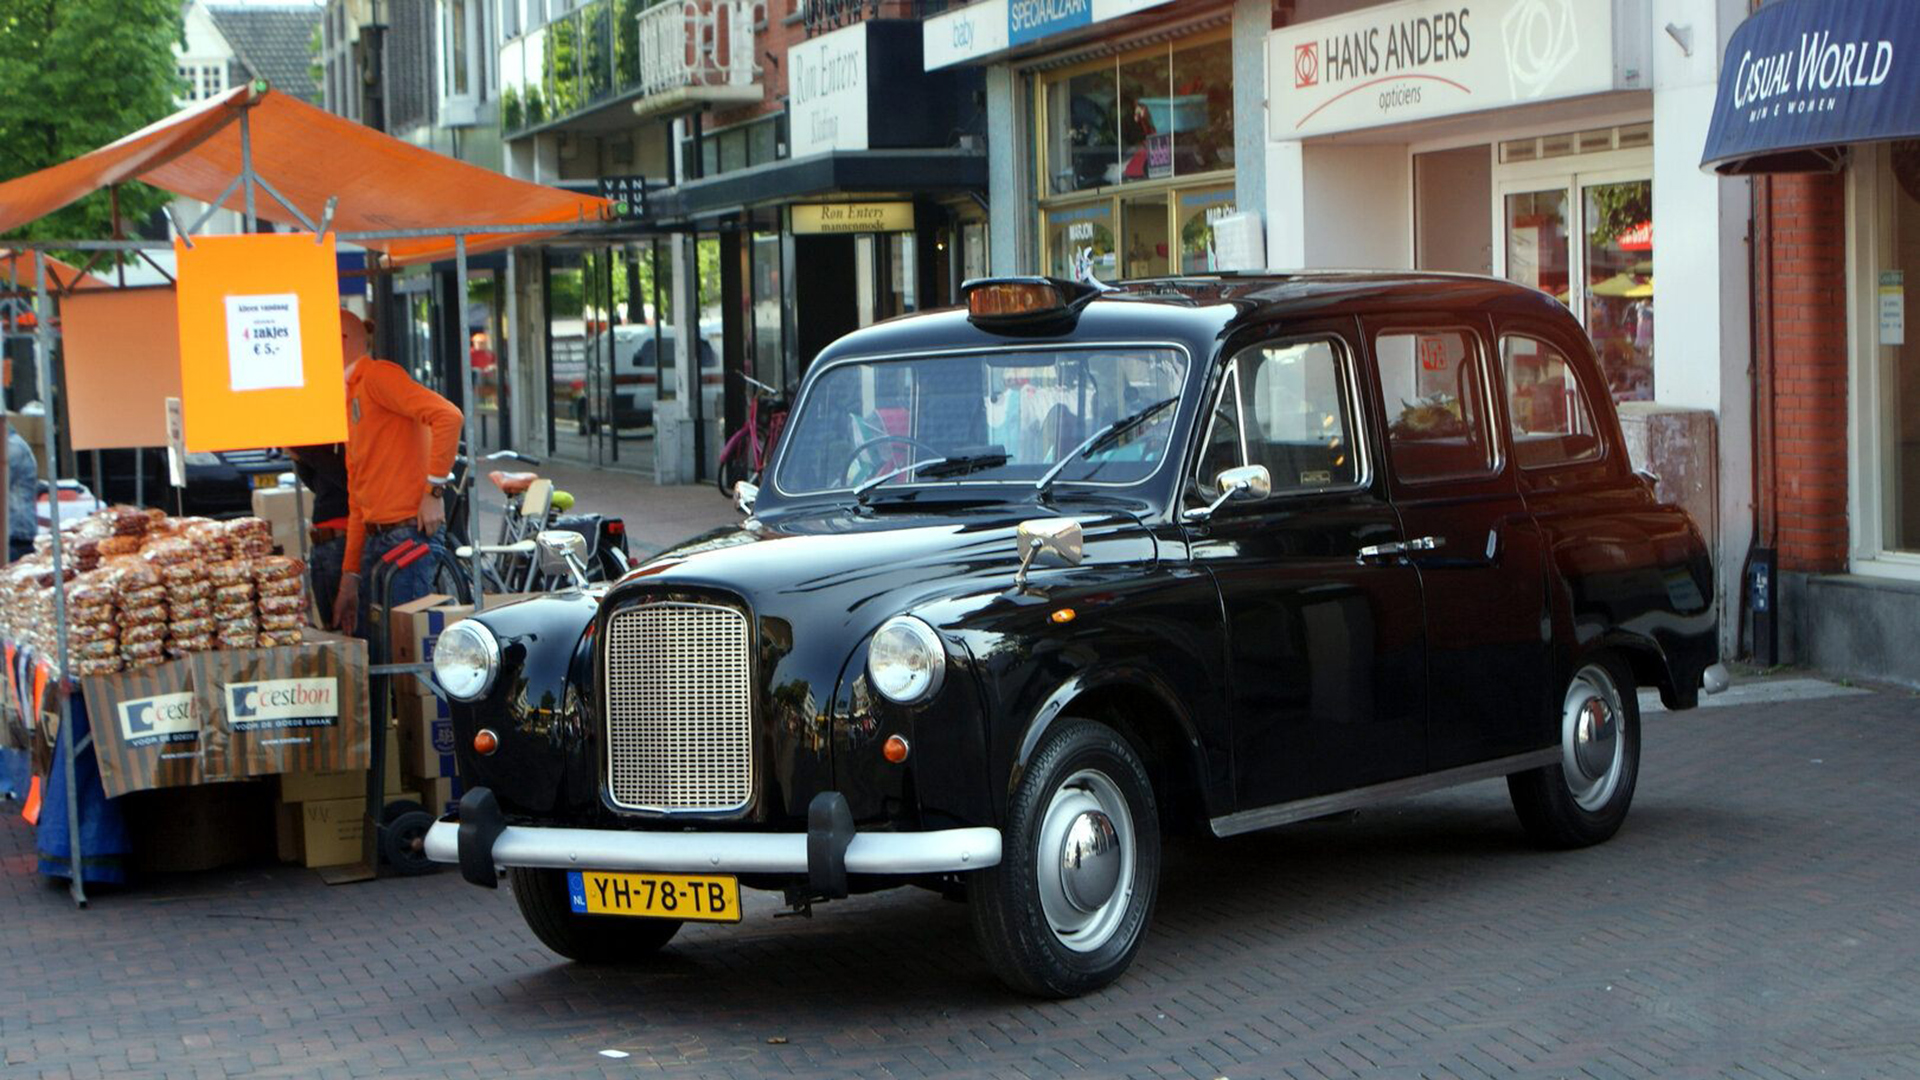 El Austin FX4 probablemente haya sido el taxi londinense más famoso. Se puso en circulación en 1959